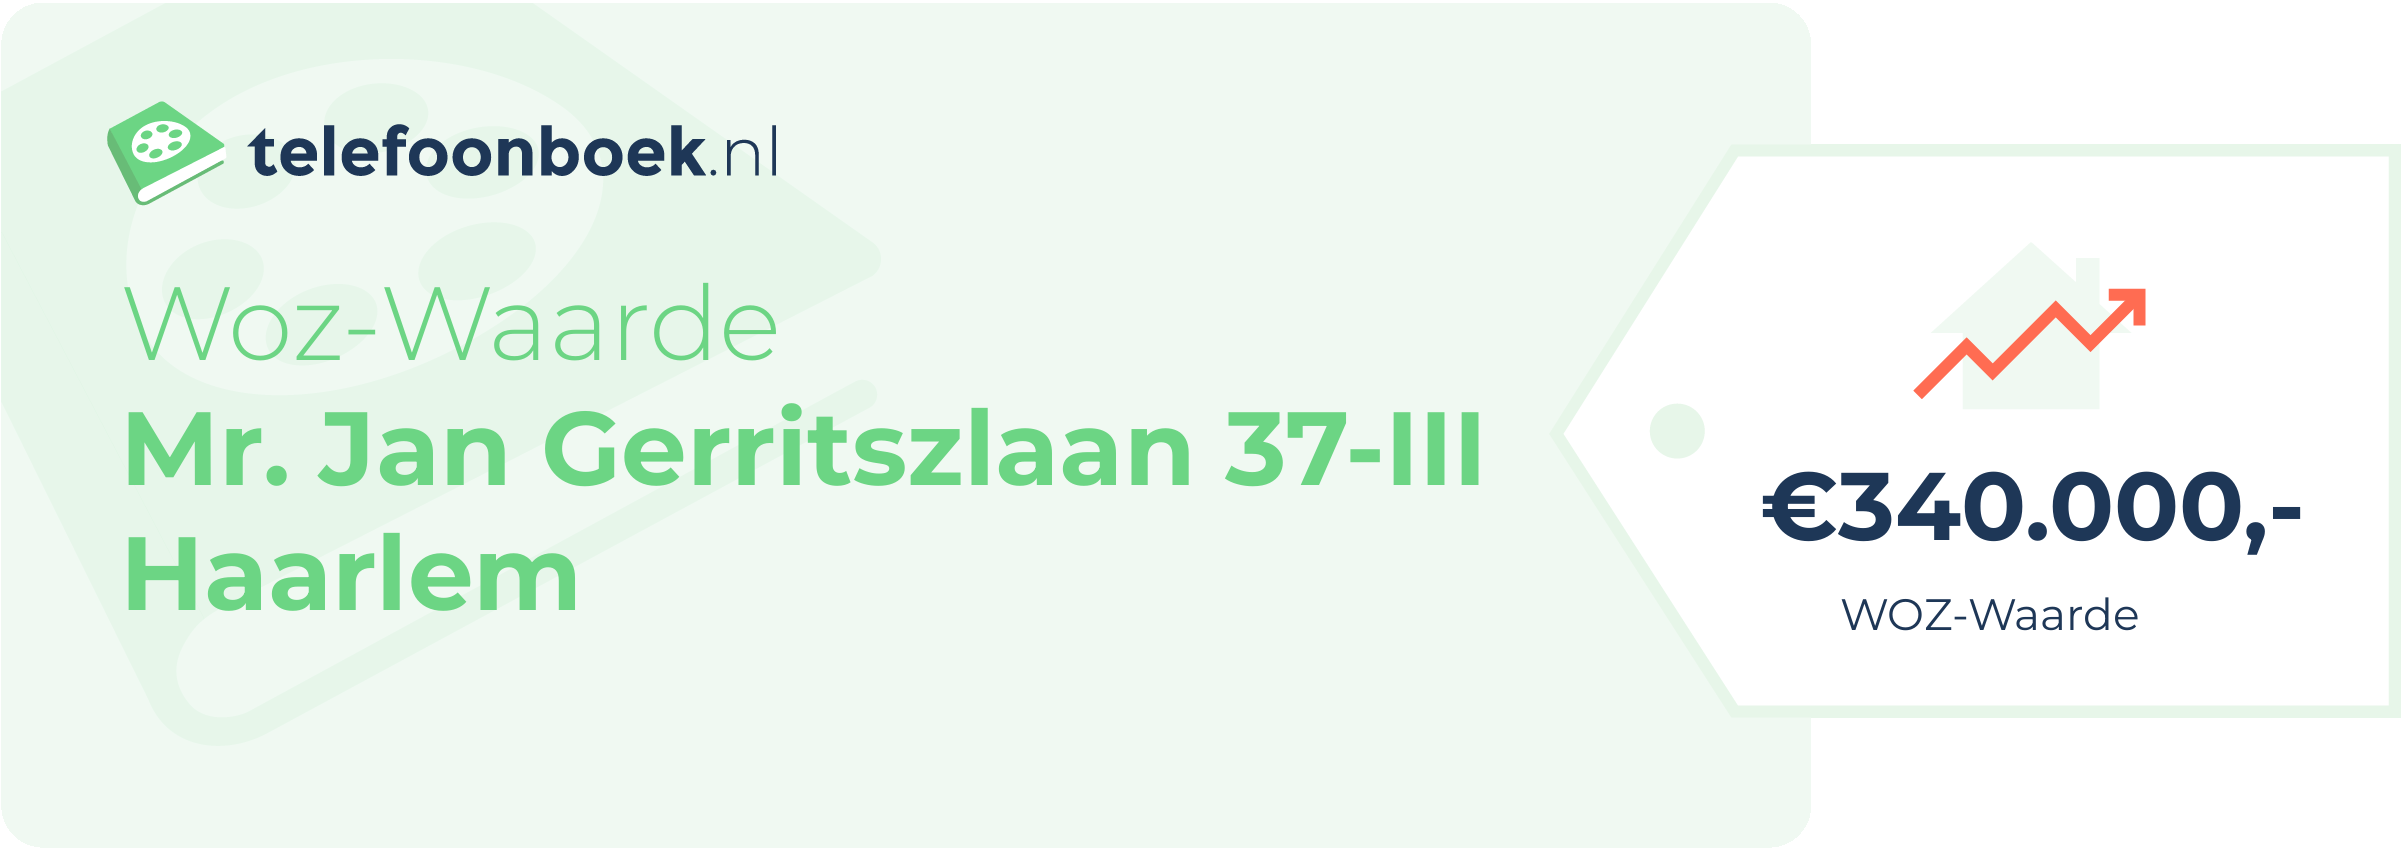 WOZ-waarde Mr. Jan Gerritszlaan 37-III Haarlem